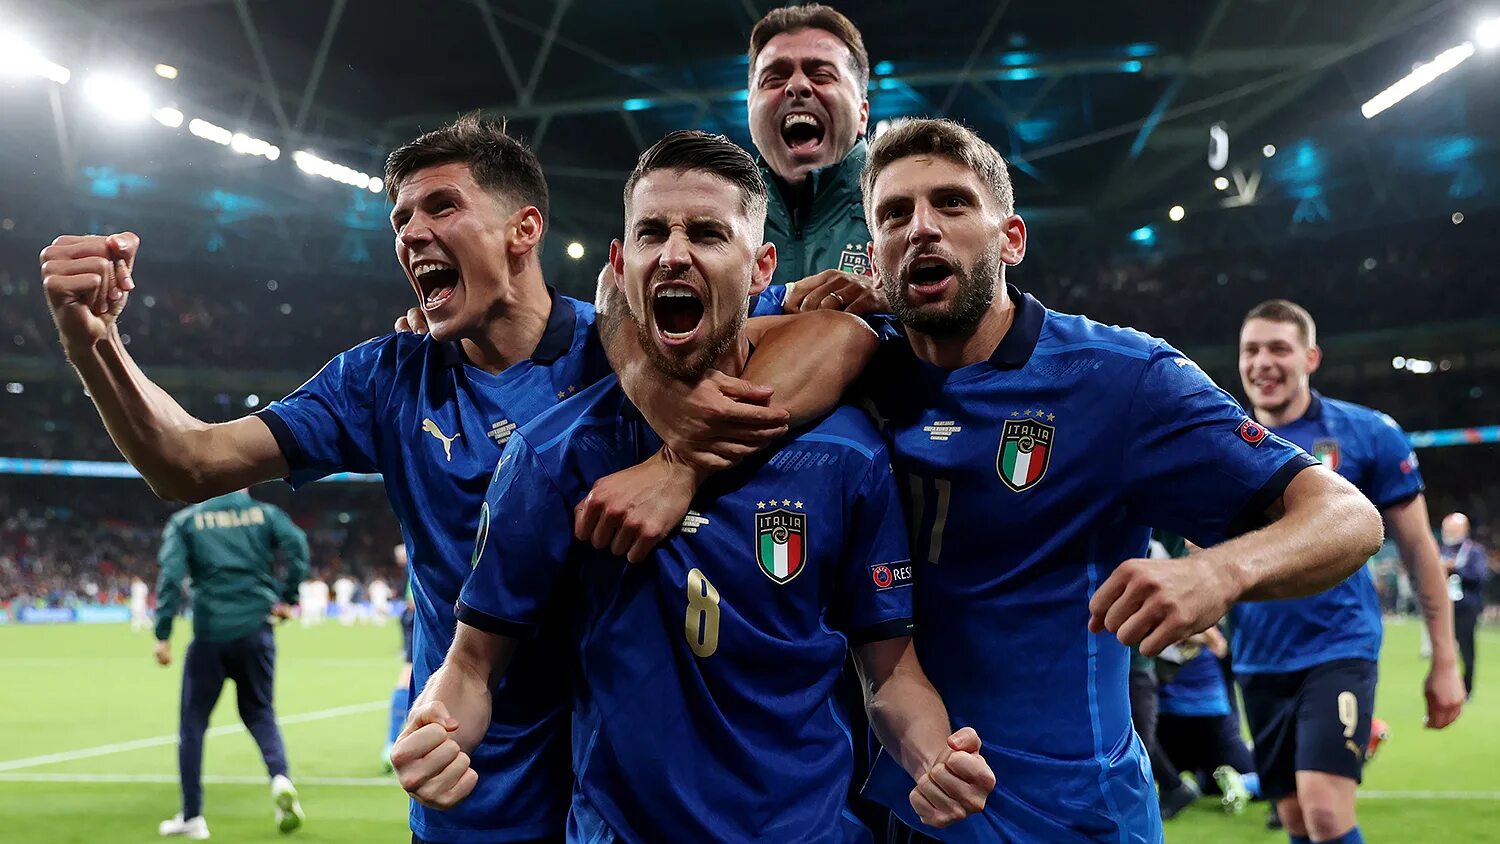 Футбол 1 8 европы. Сборная Италии по футболу евро 2020. Сборная Италии по футболу 2021 евро. Сборная Италии чемпион Европы. Финал евро 2020 по футболу Италия Англия.